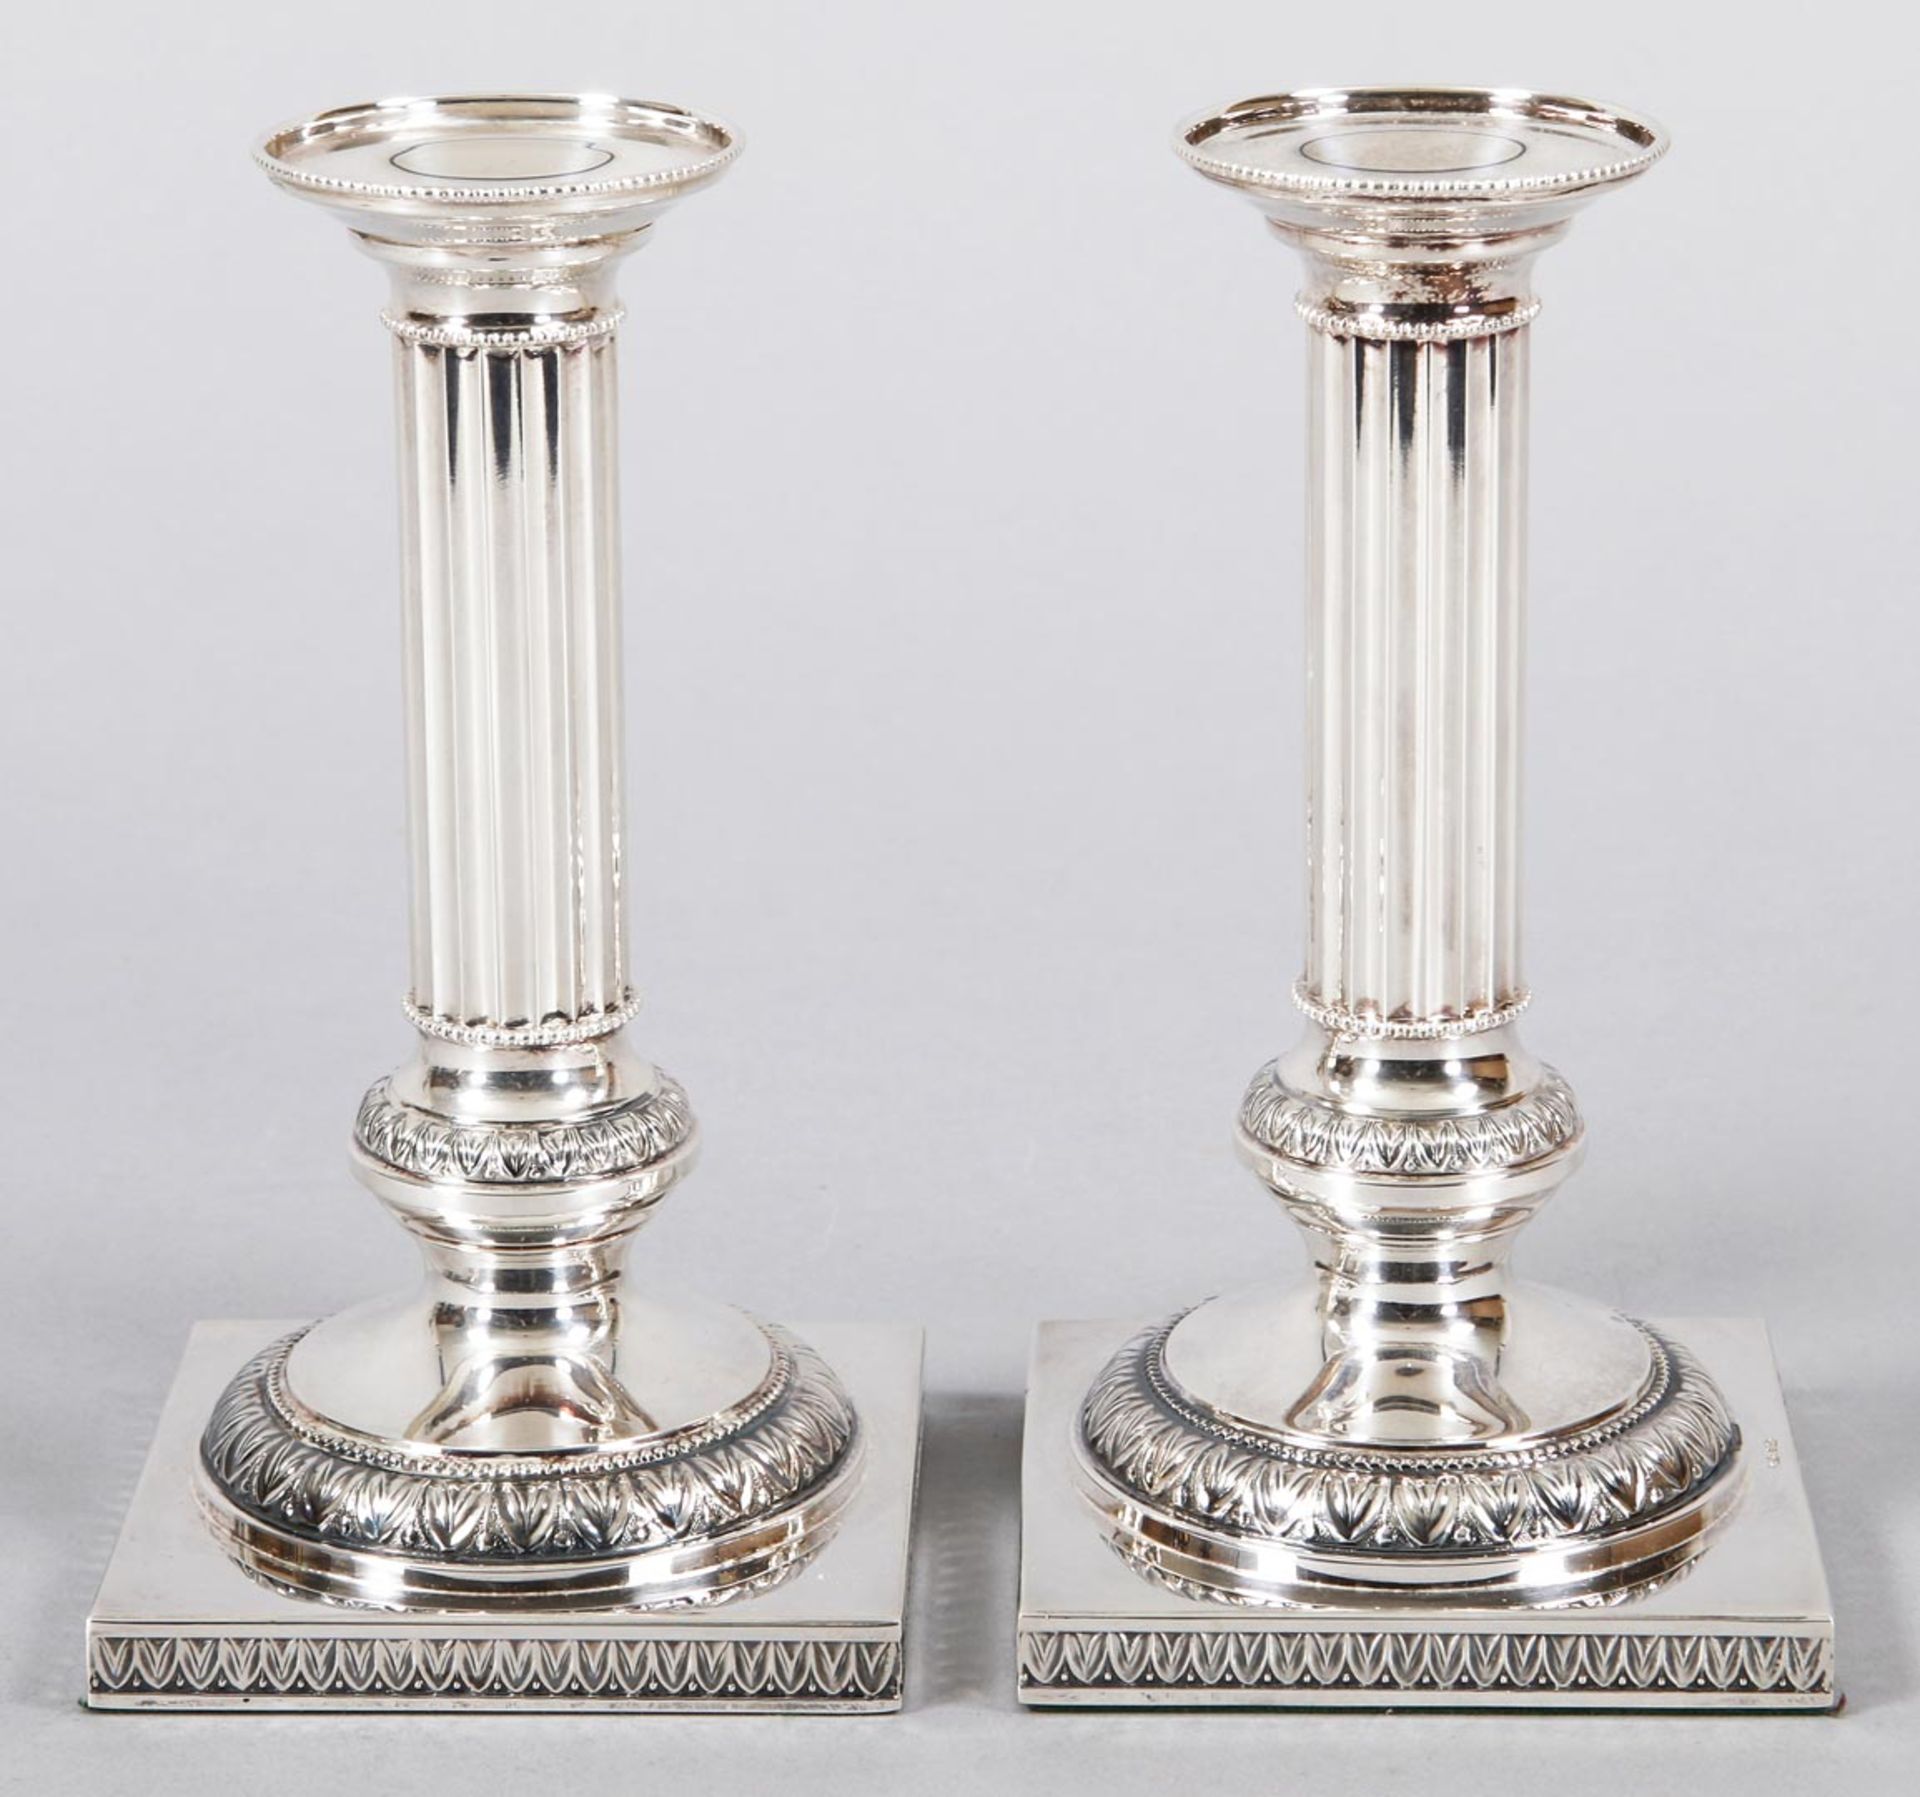 Paar Empire-Leuchter 925er Silber, Robbe & Berking, 20.Jh. Auf Quadratstand (gewichtet) der